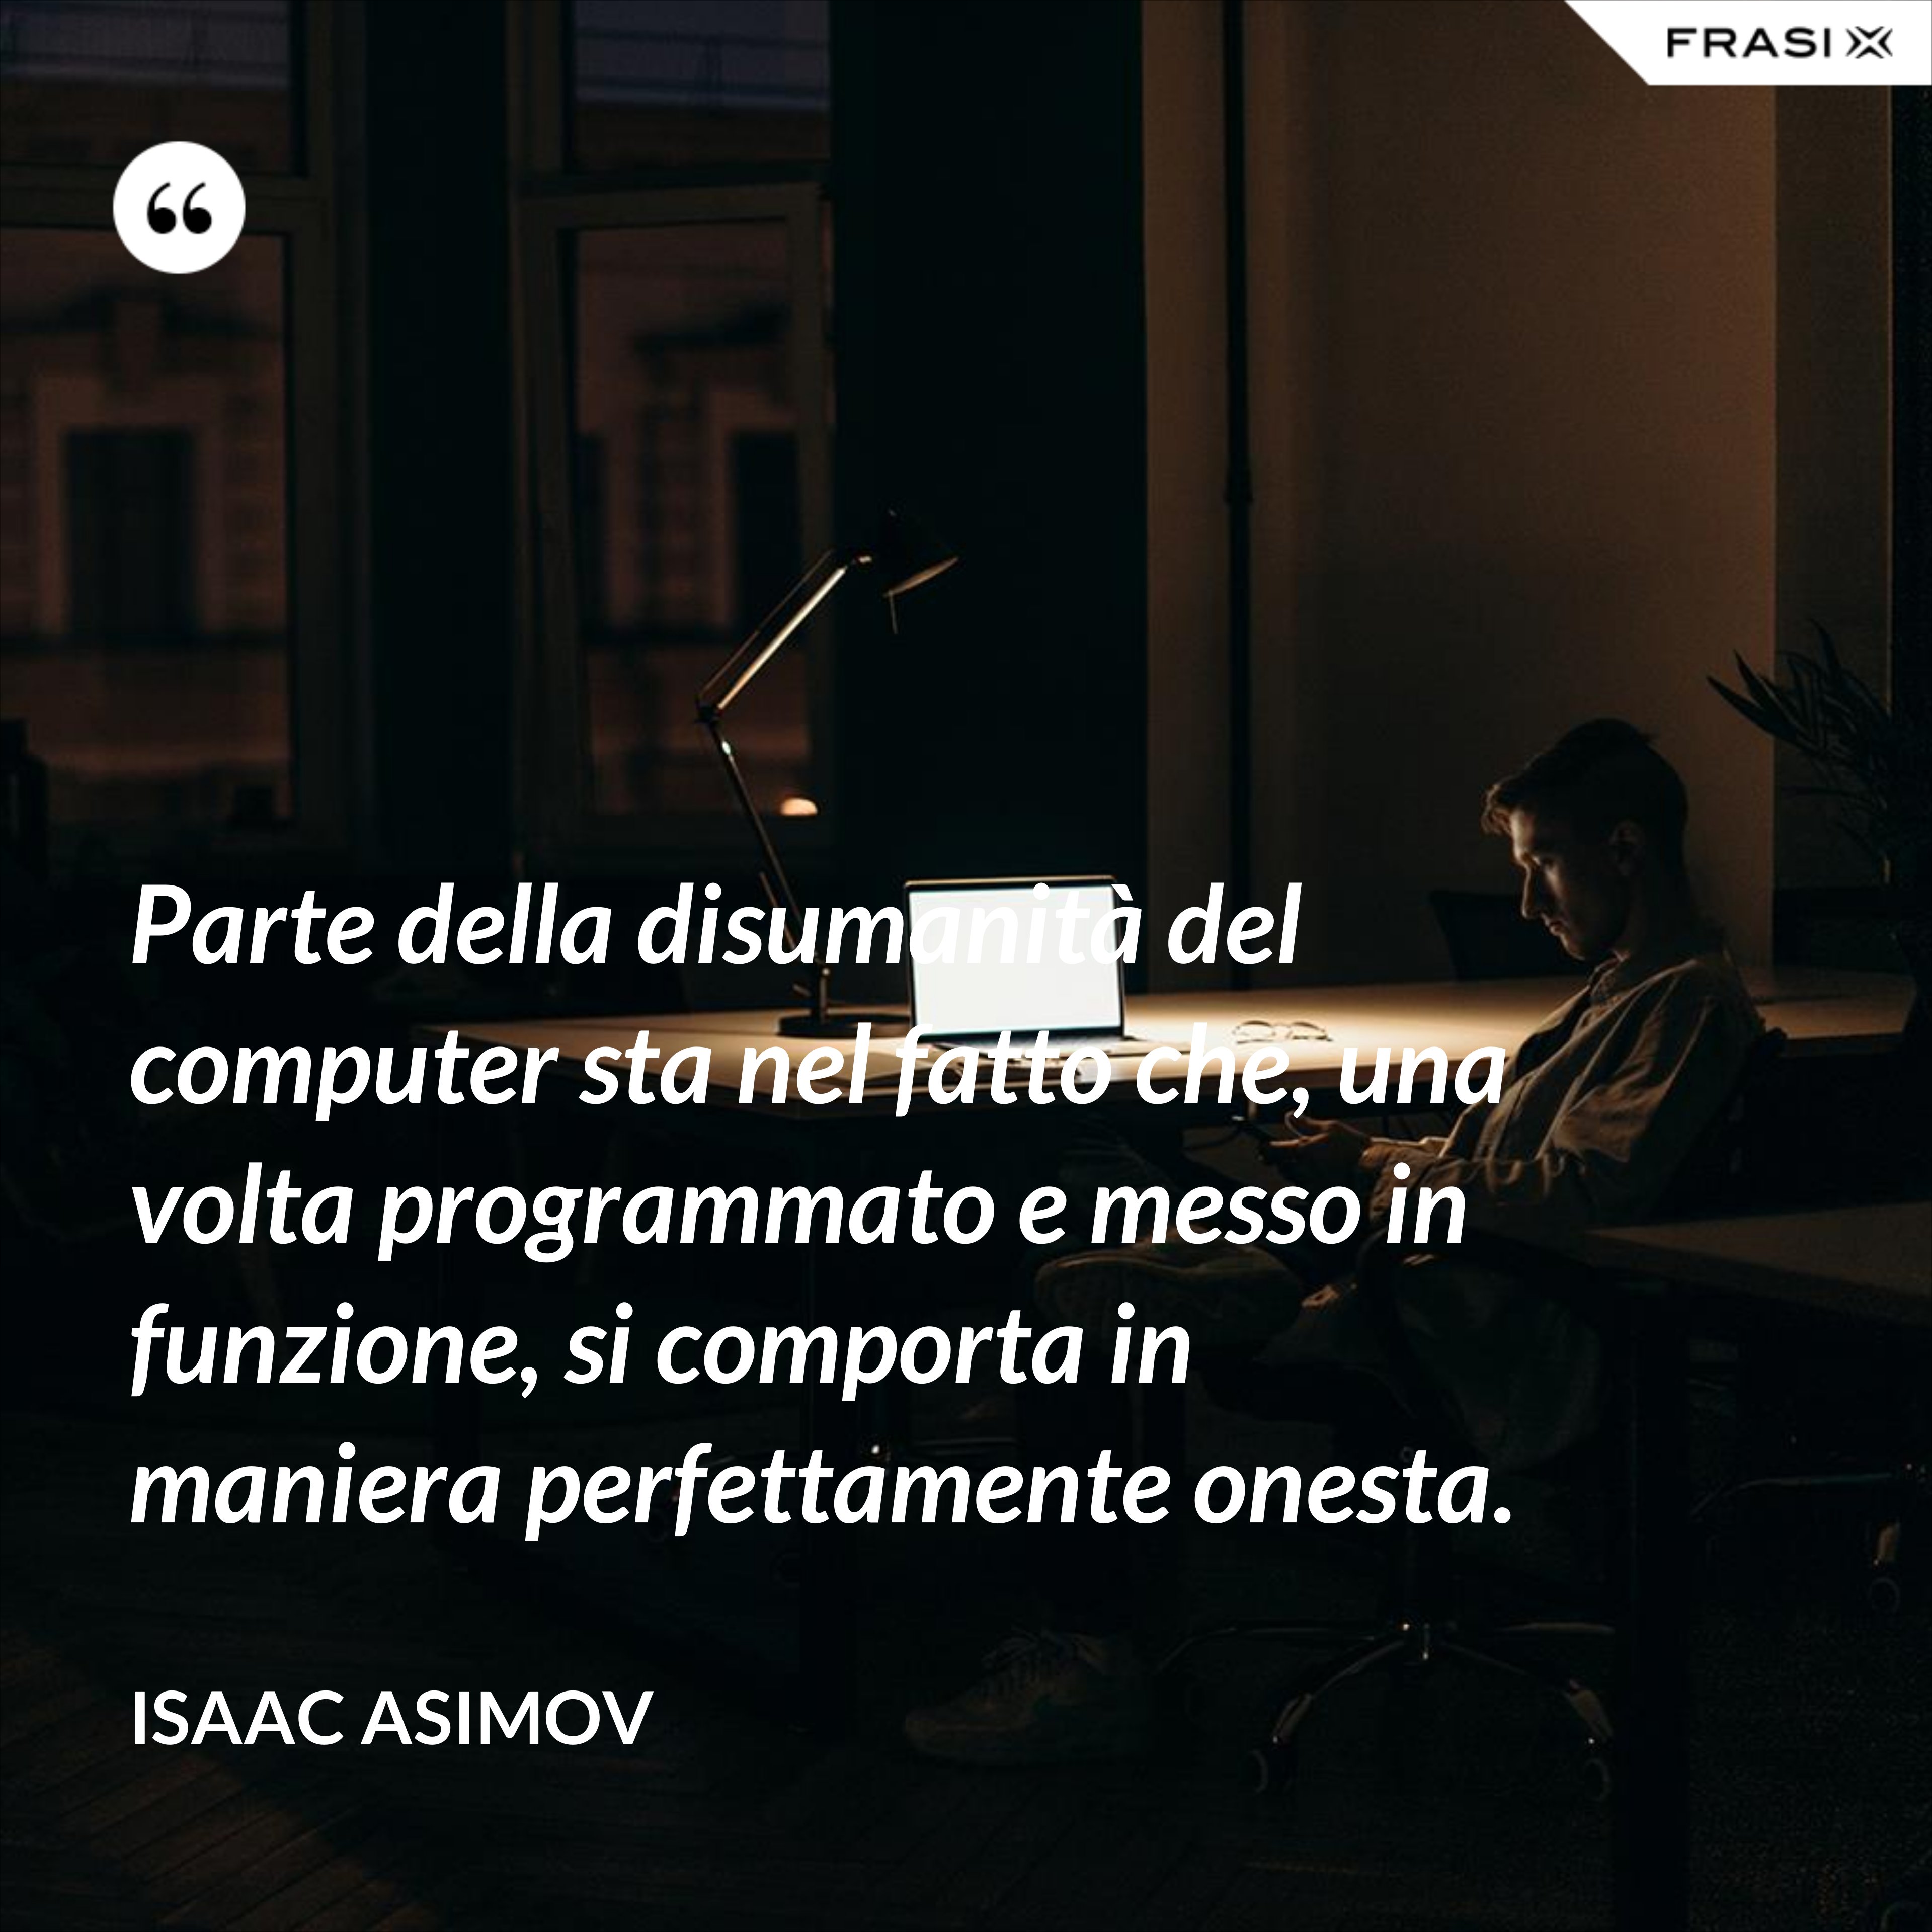 Parte della disumanità del computer sta nel fatto che, una volta programmato e messo in funzione, si comporta in maniera perfettamente onesta. - Isaac Asimov